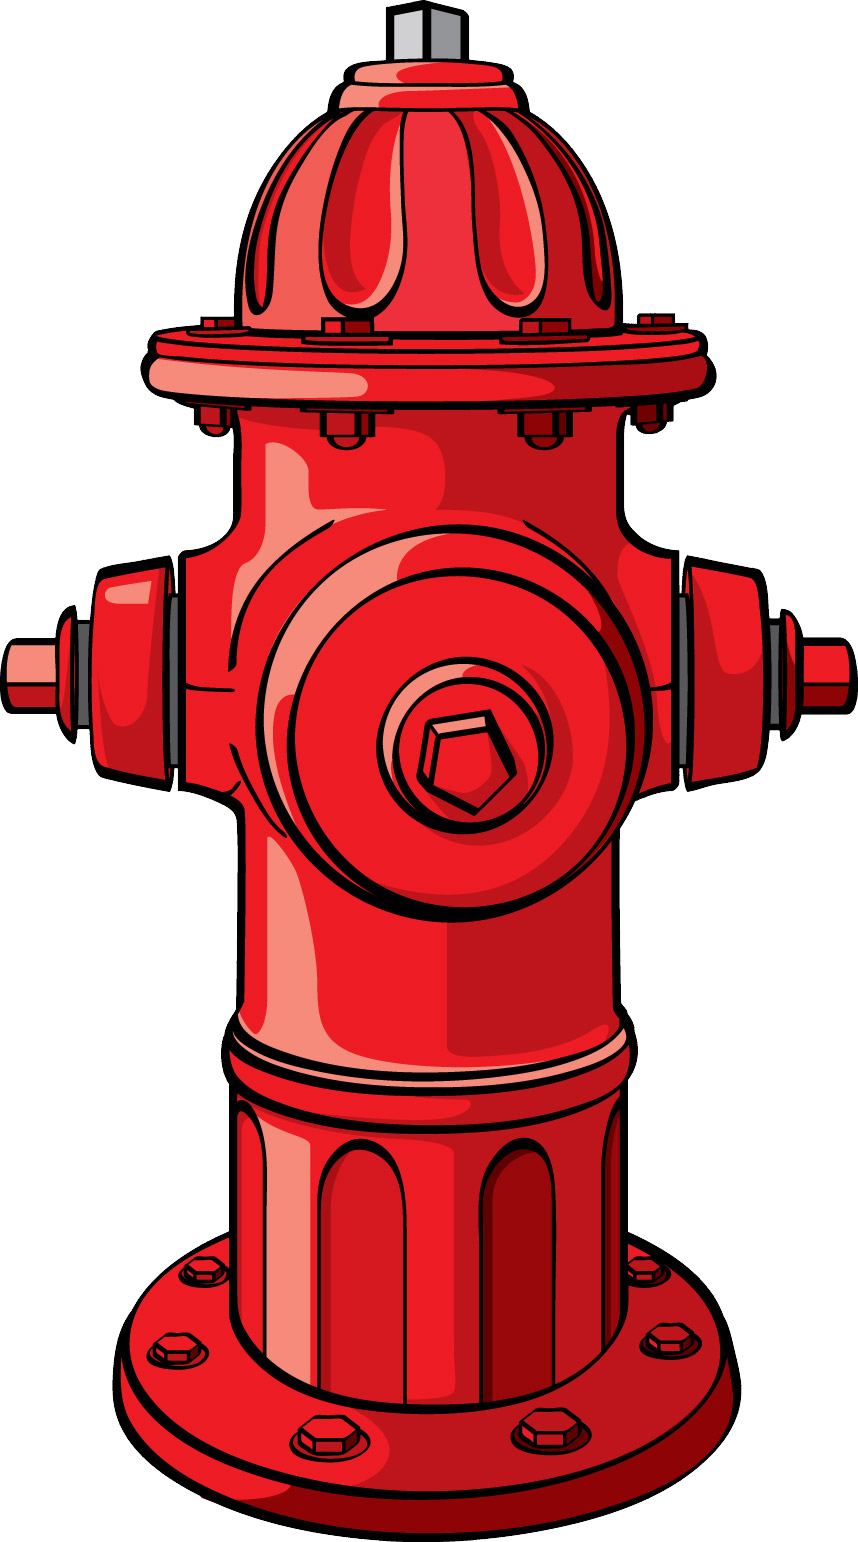 Hydrant przeciwpożarowy